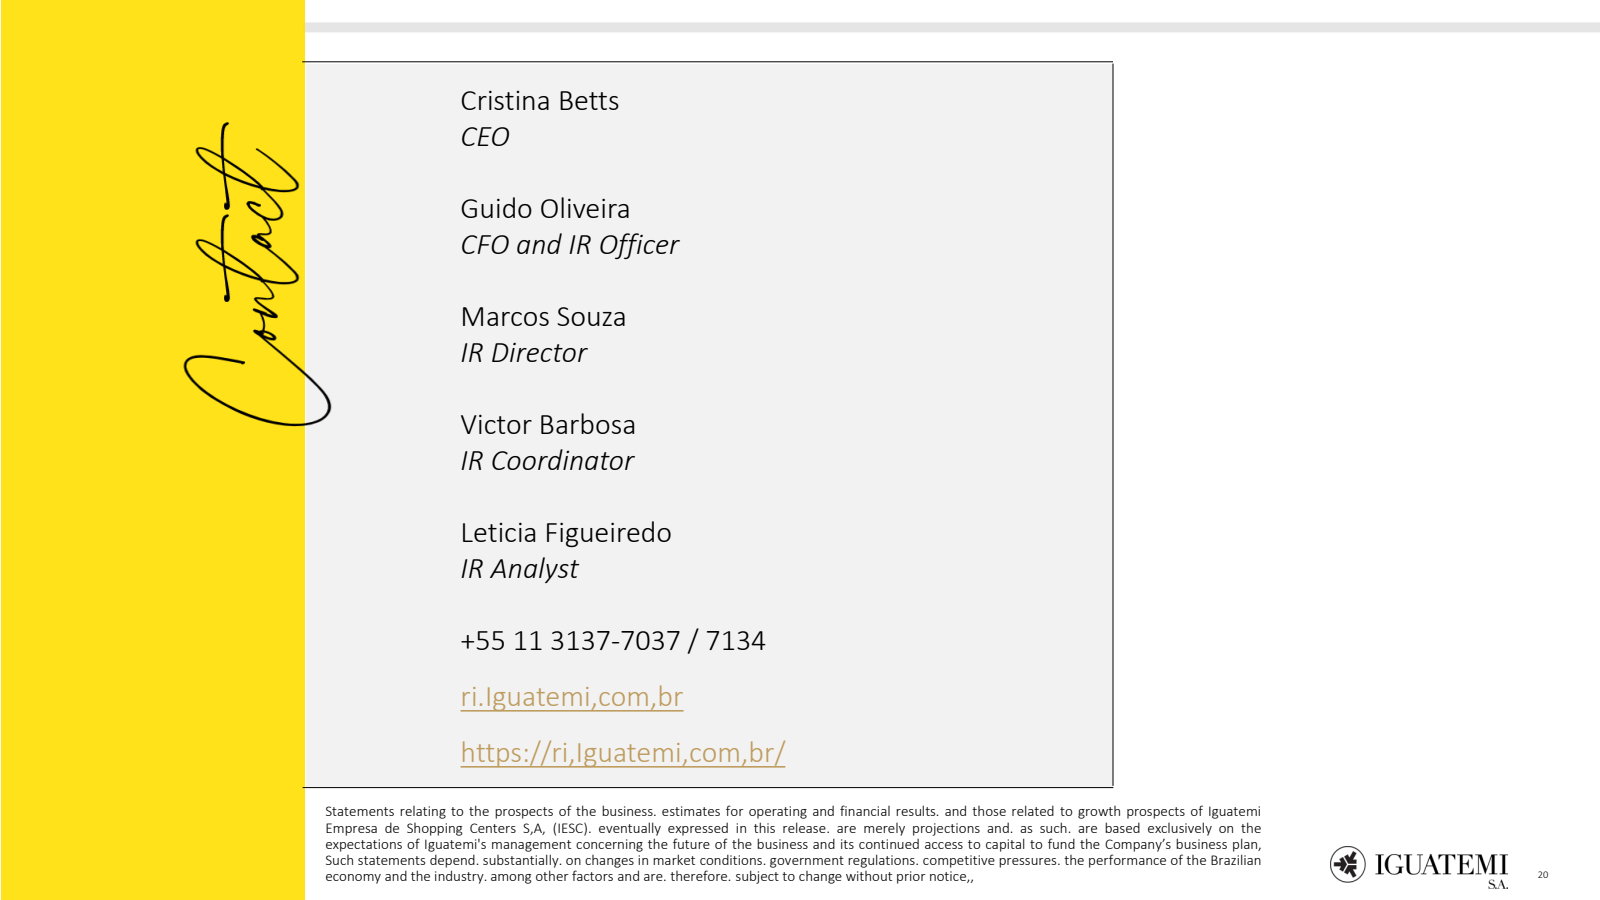 Contact 

Cristina B